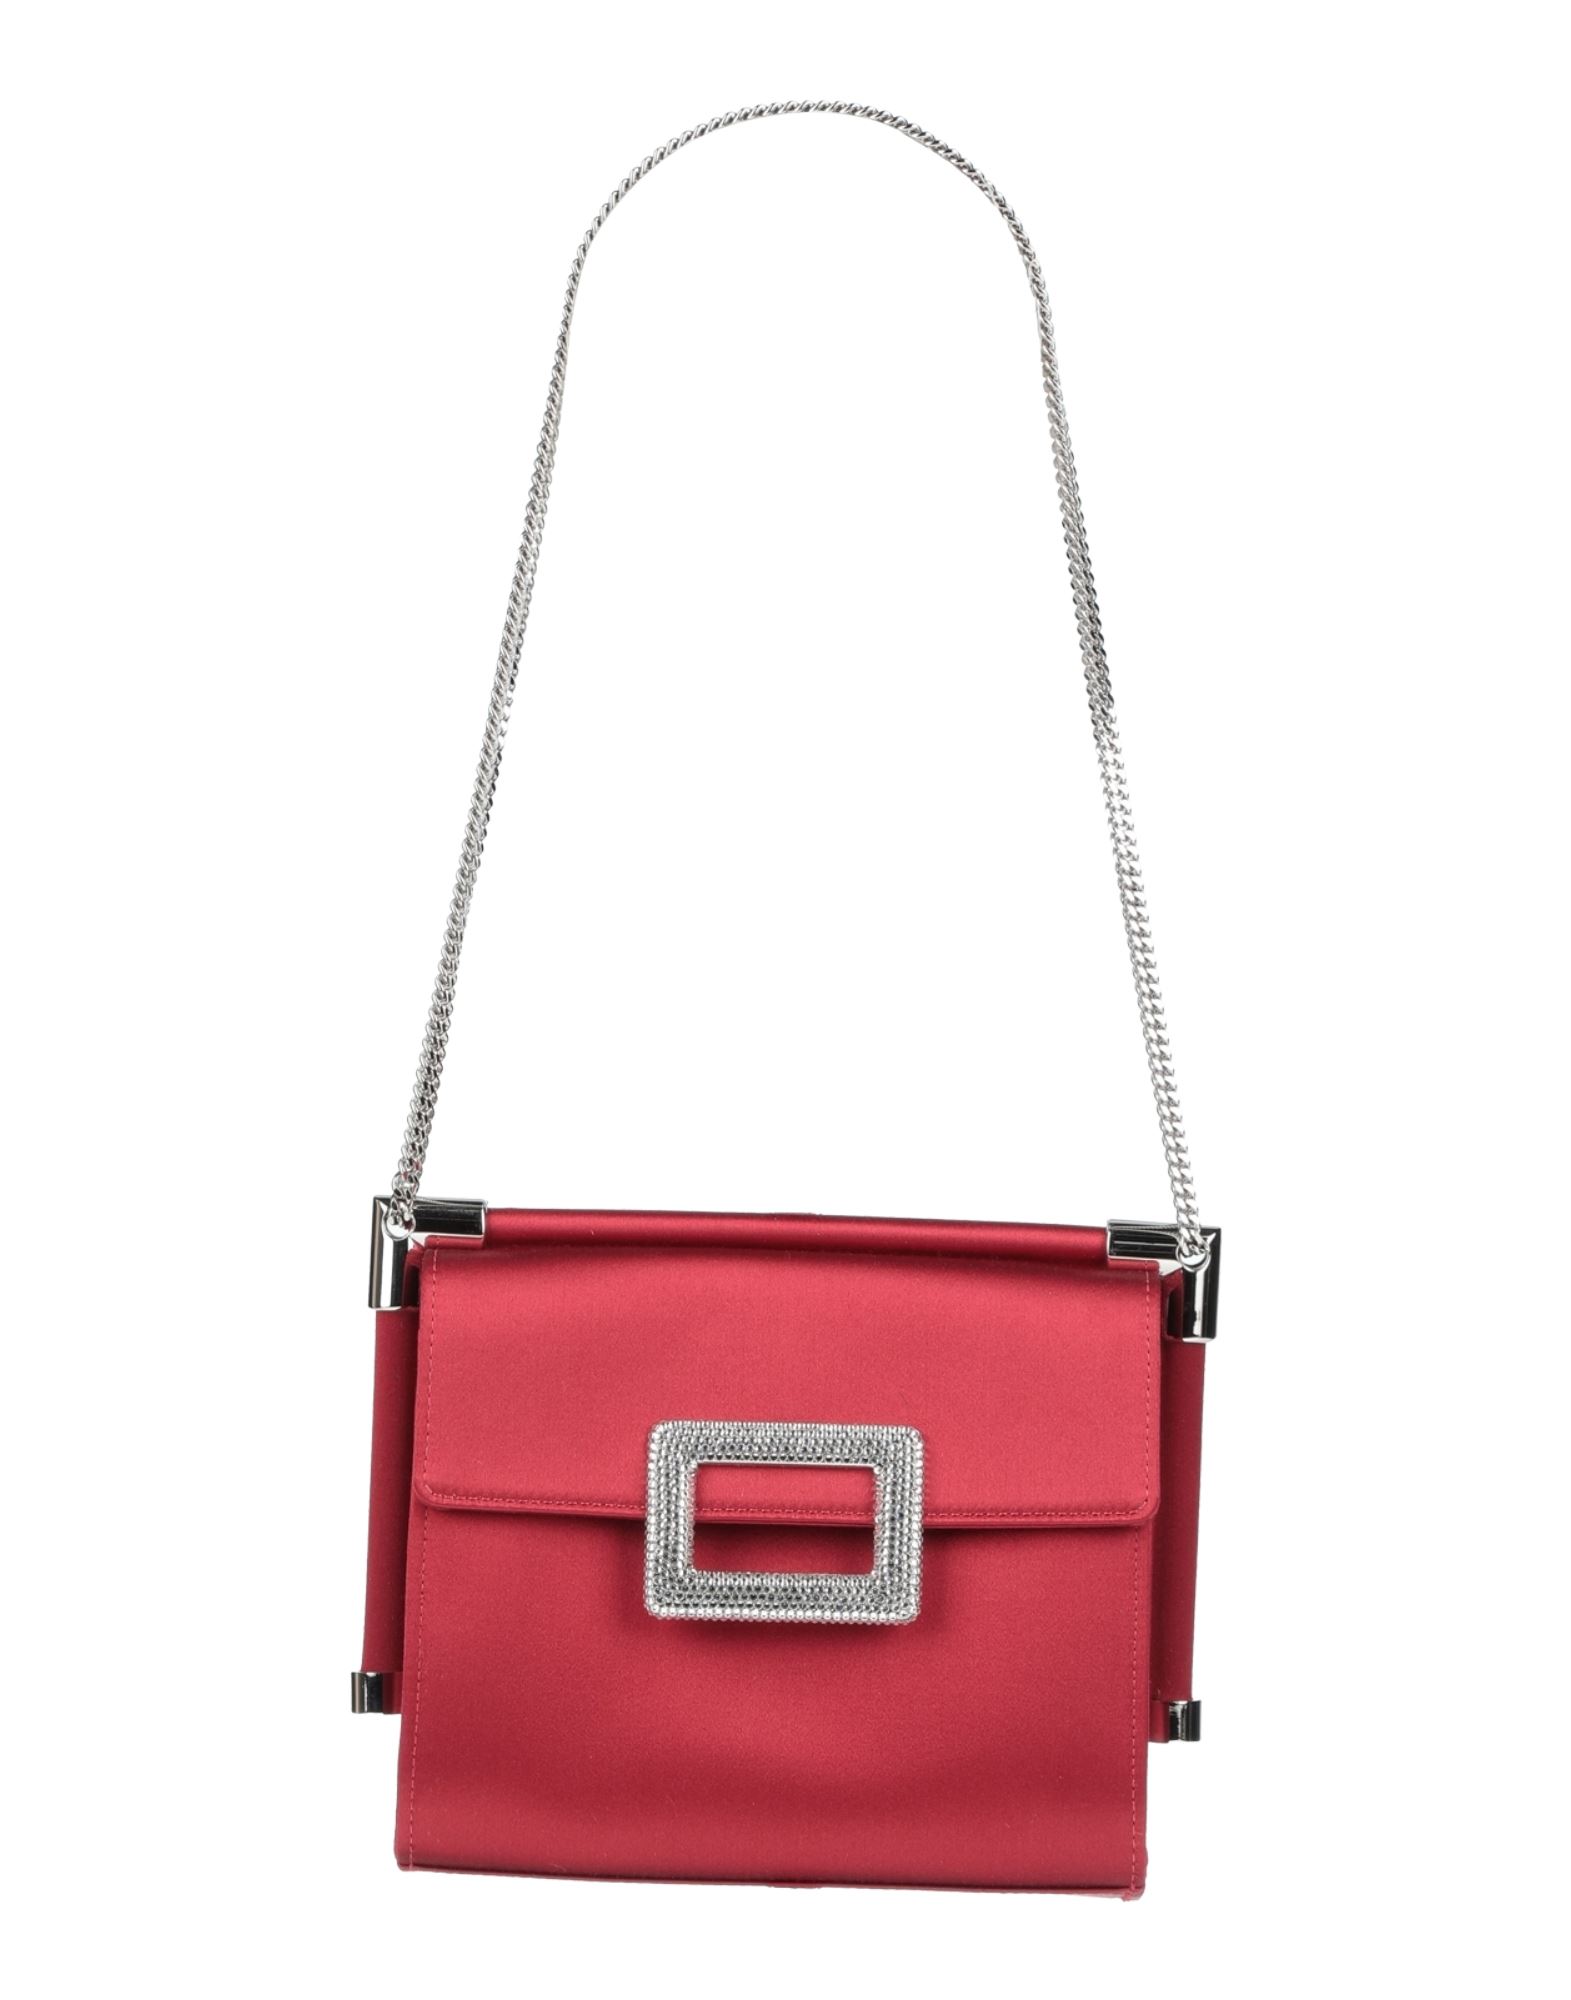 Roger Vivier Handbags In Red